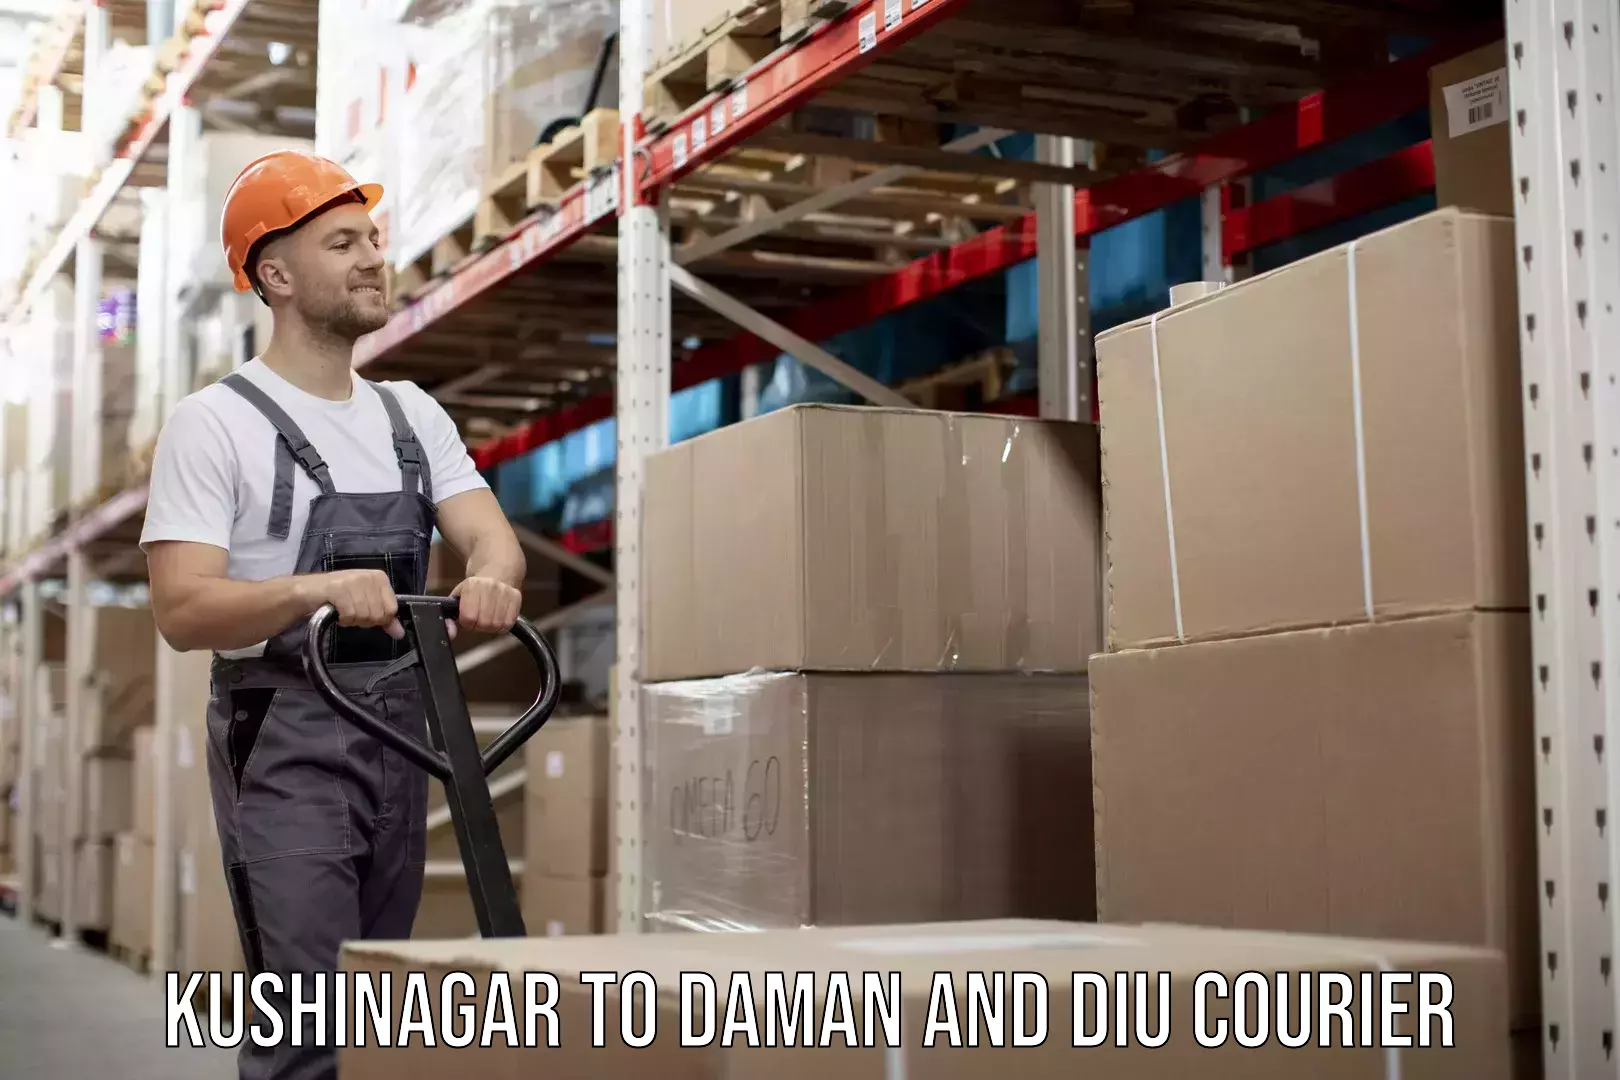 Moving and handling services Kushinagar to Daman and Diu